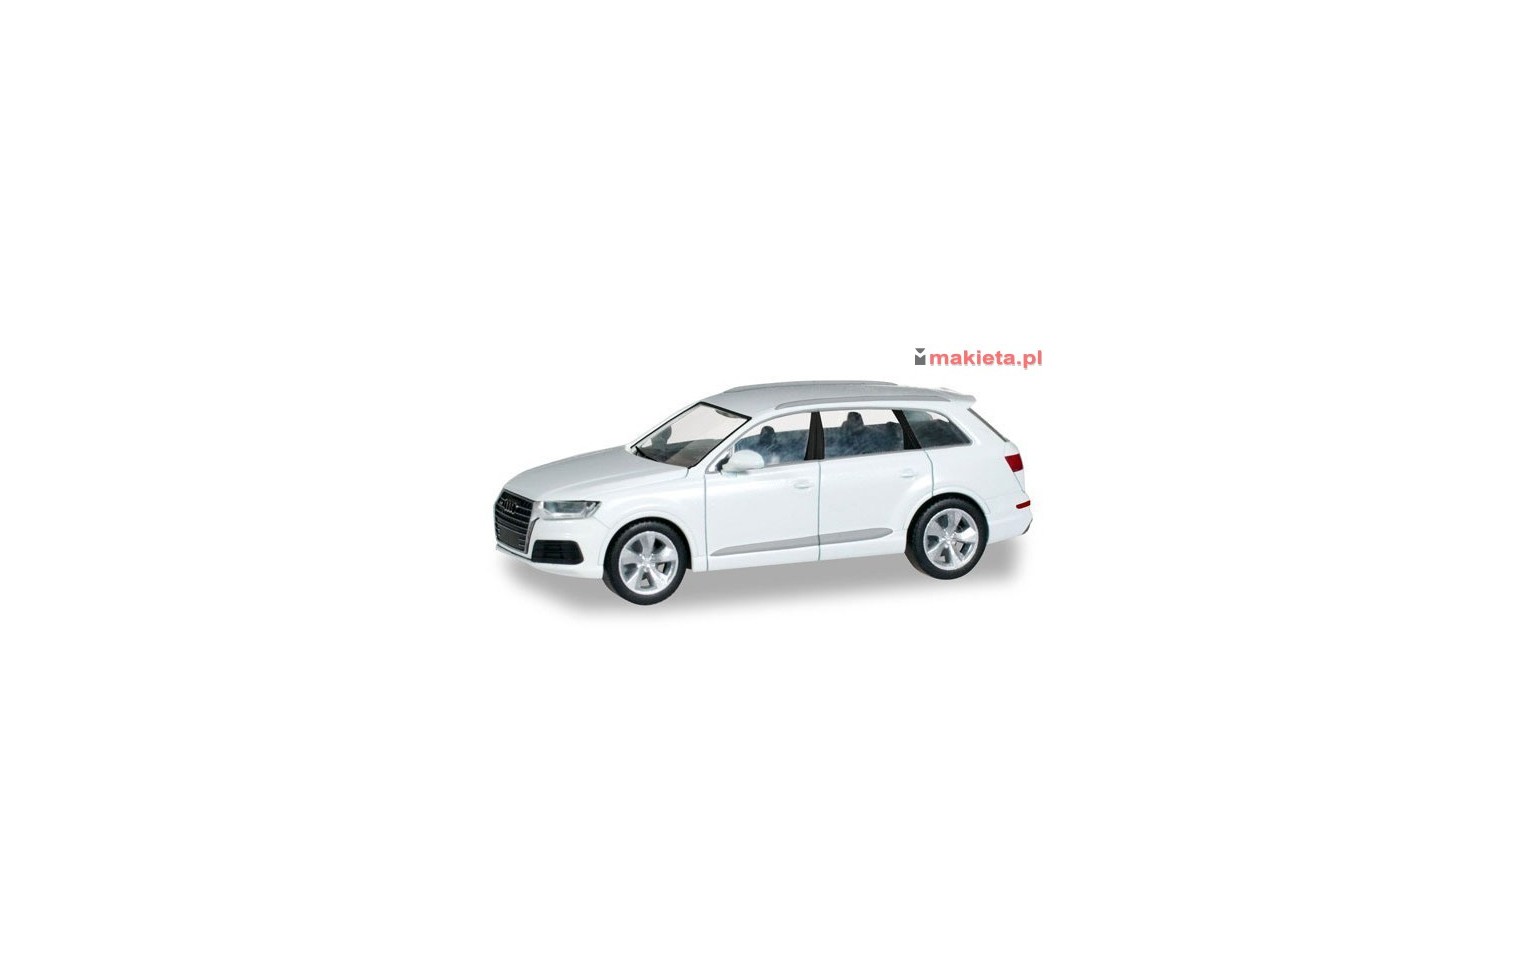 Herpa 028448, Audi Q7, carrara white, H0